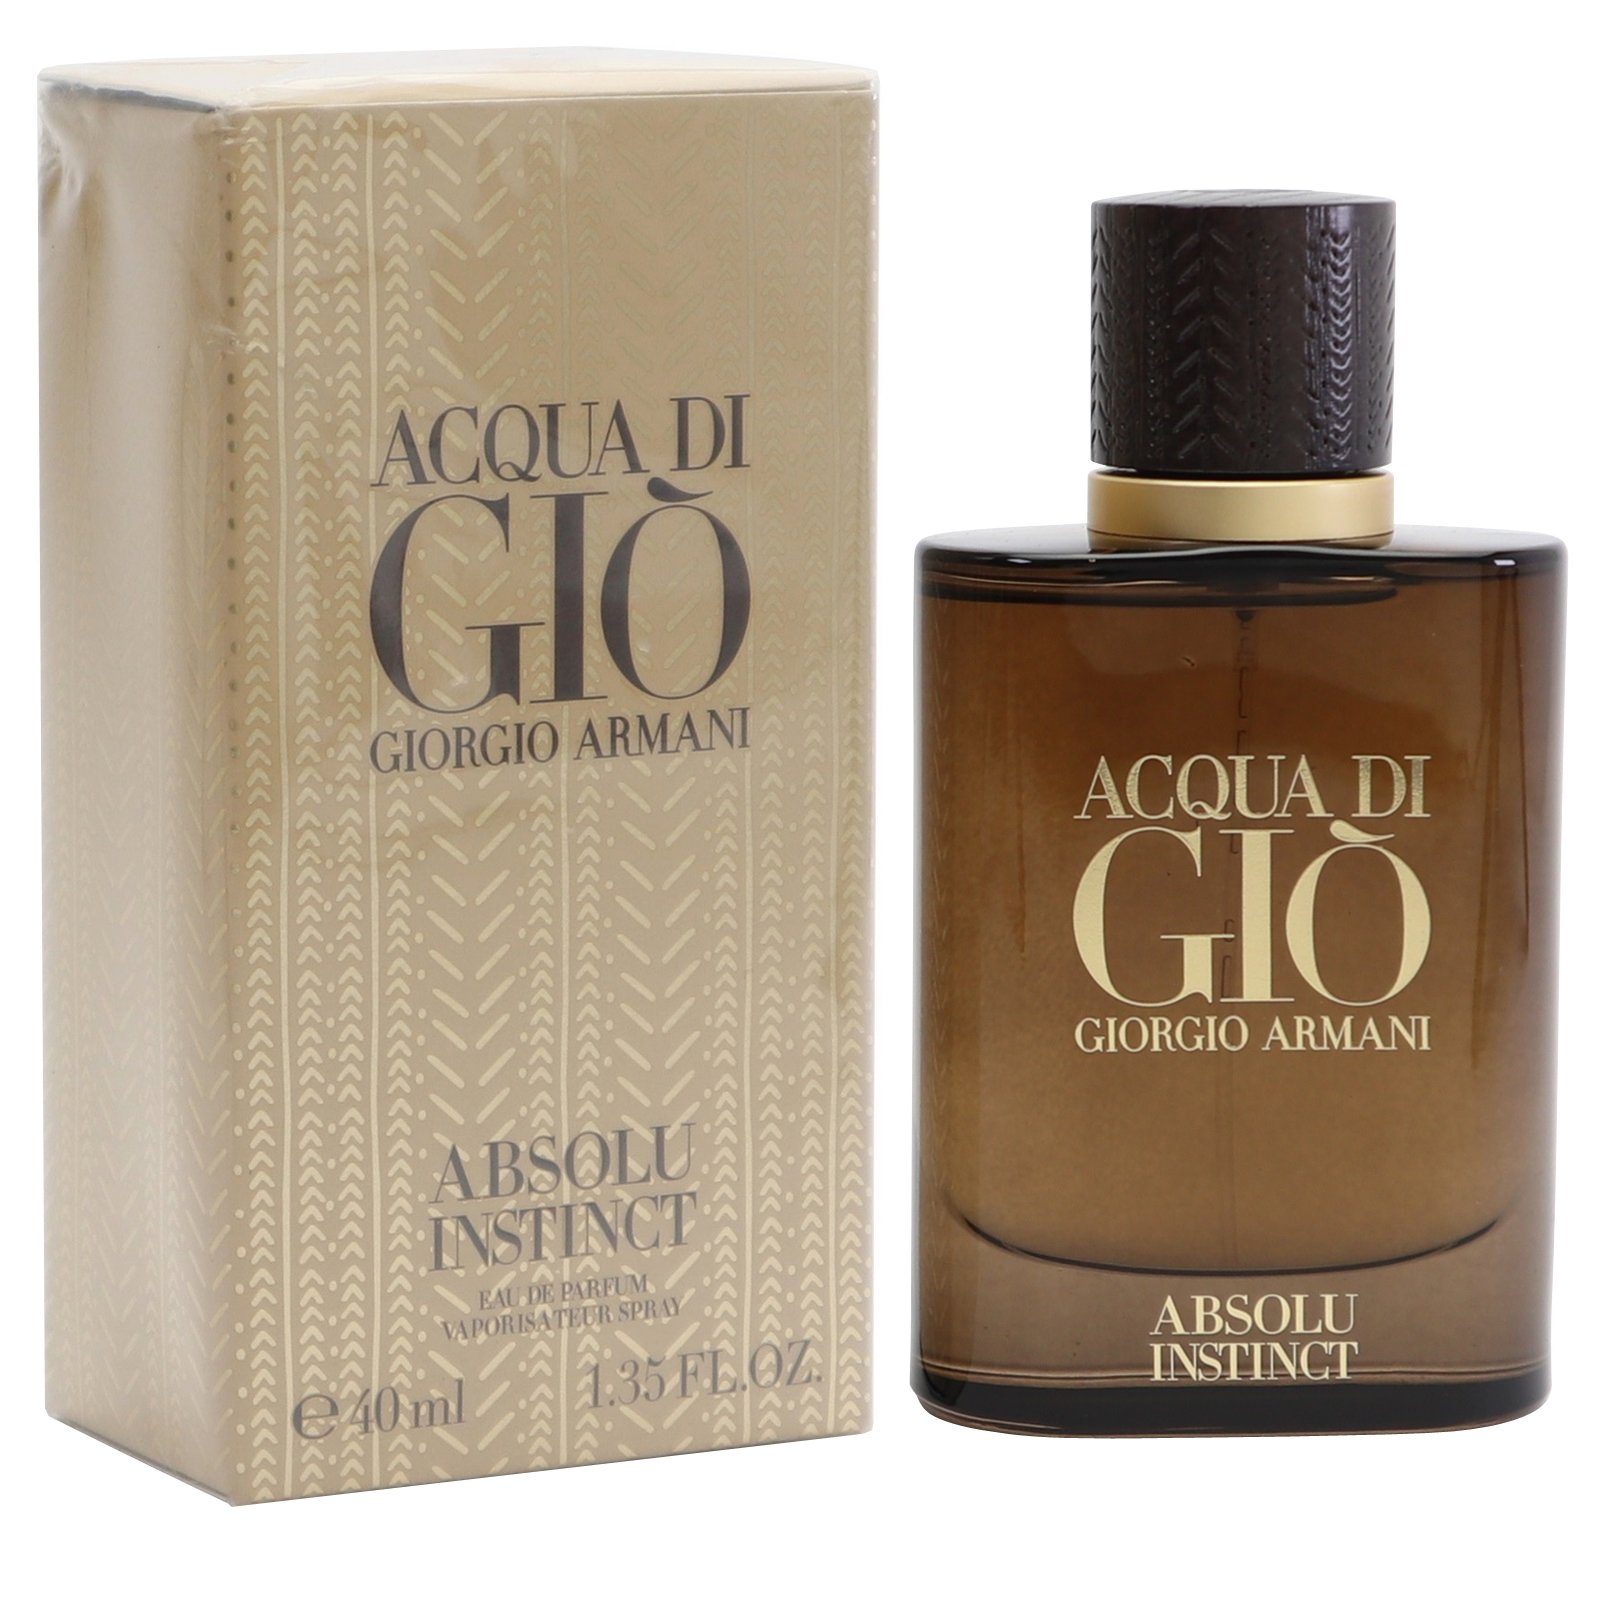 Giorgio Armani Eau de Parfum Giorgio Armani Acqua di Gio Absolu Instinct Eau de Parfum Spray 40 ml